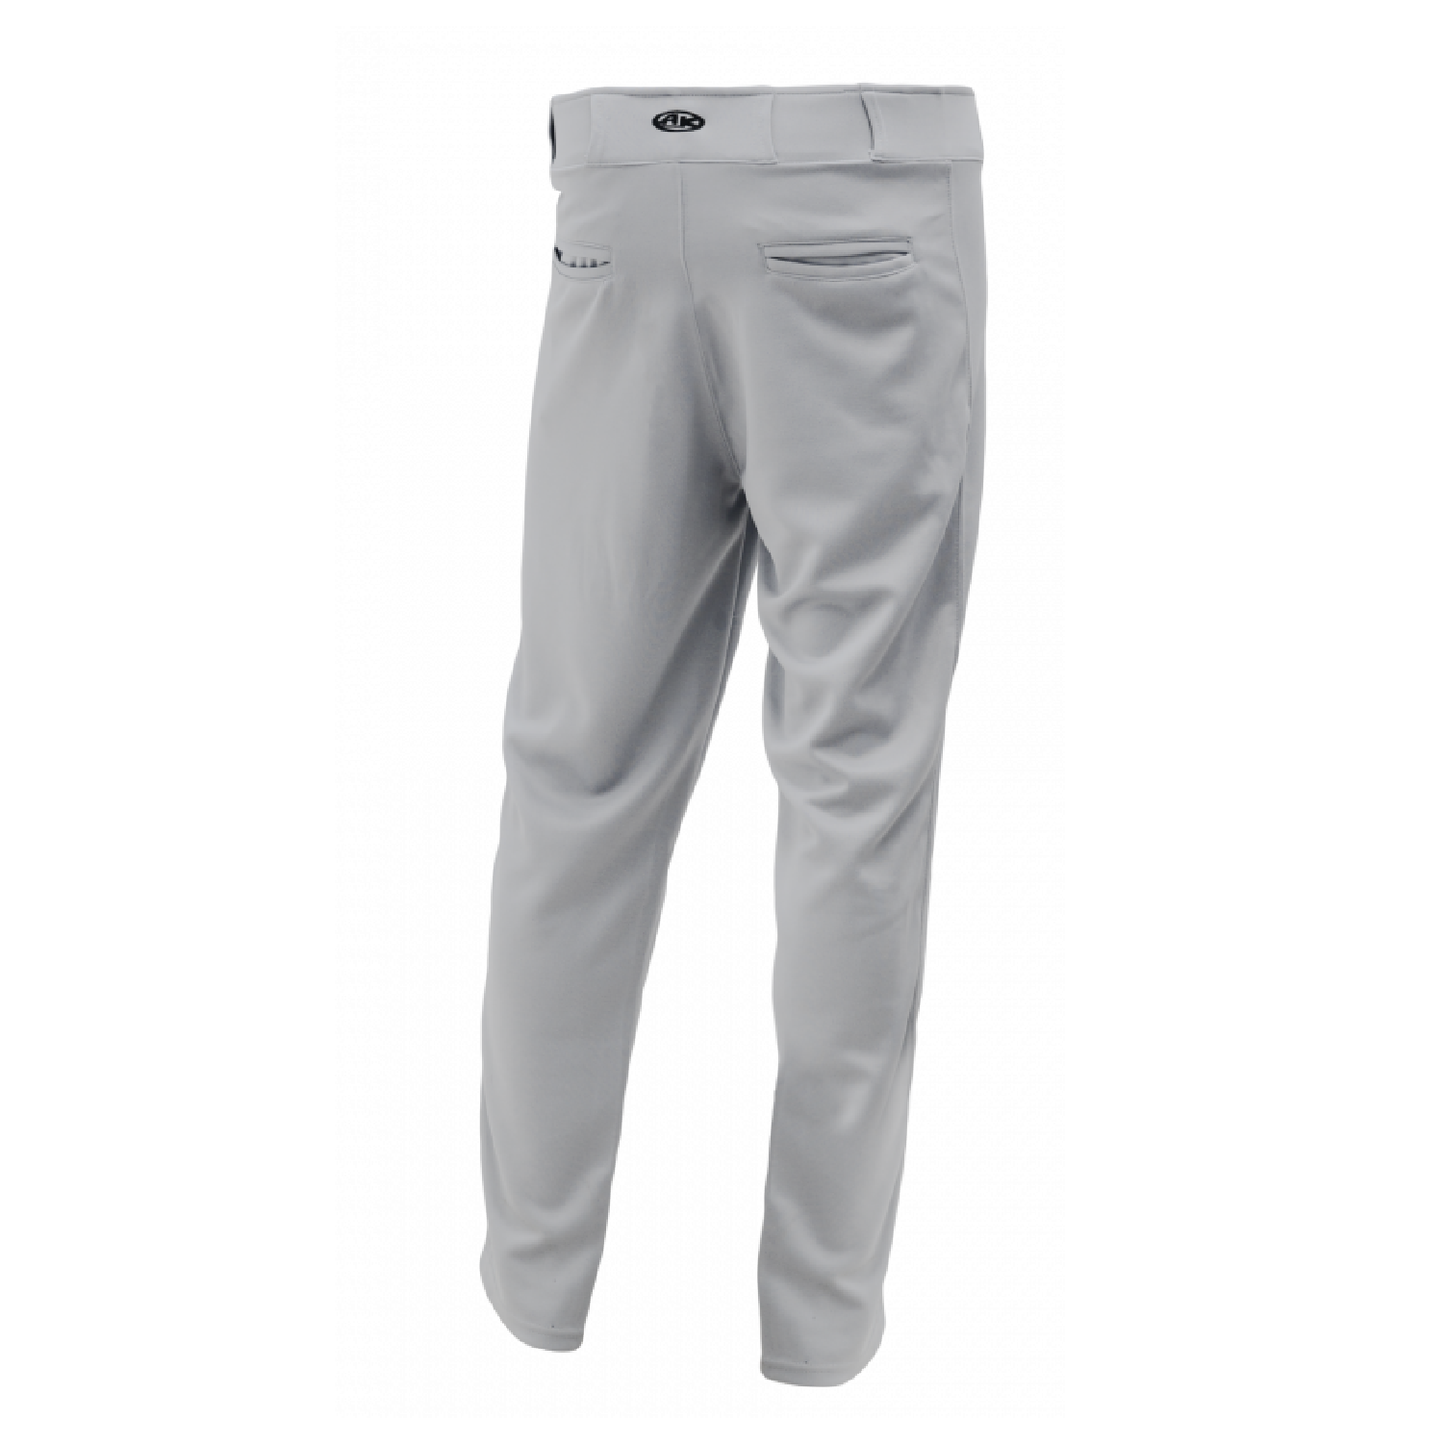 Grey Pro Baseball Pants